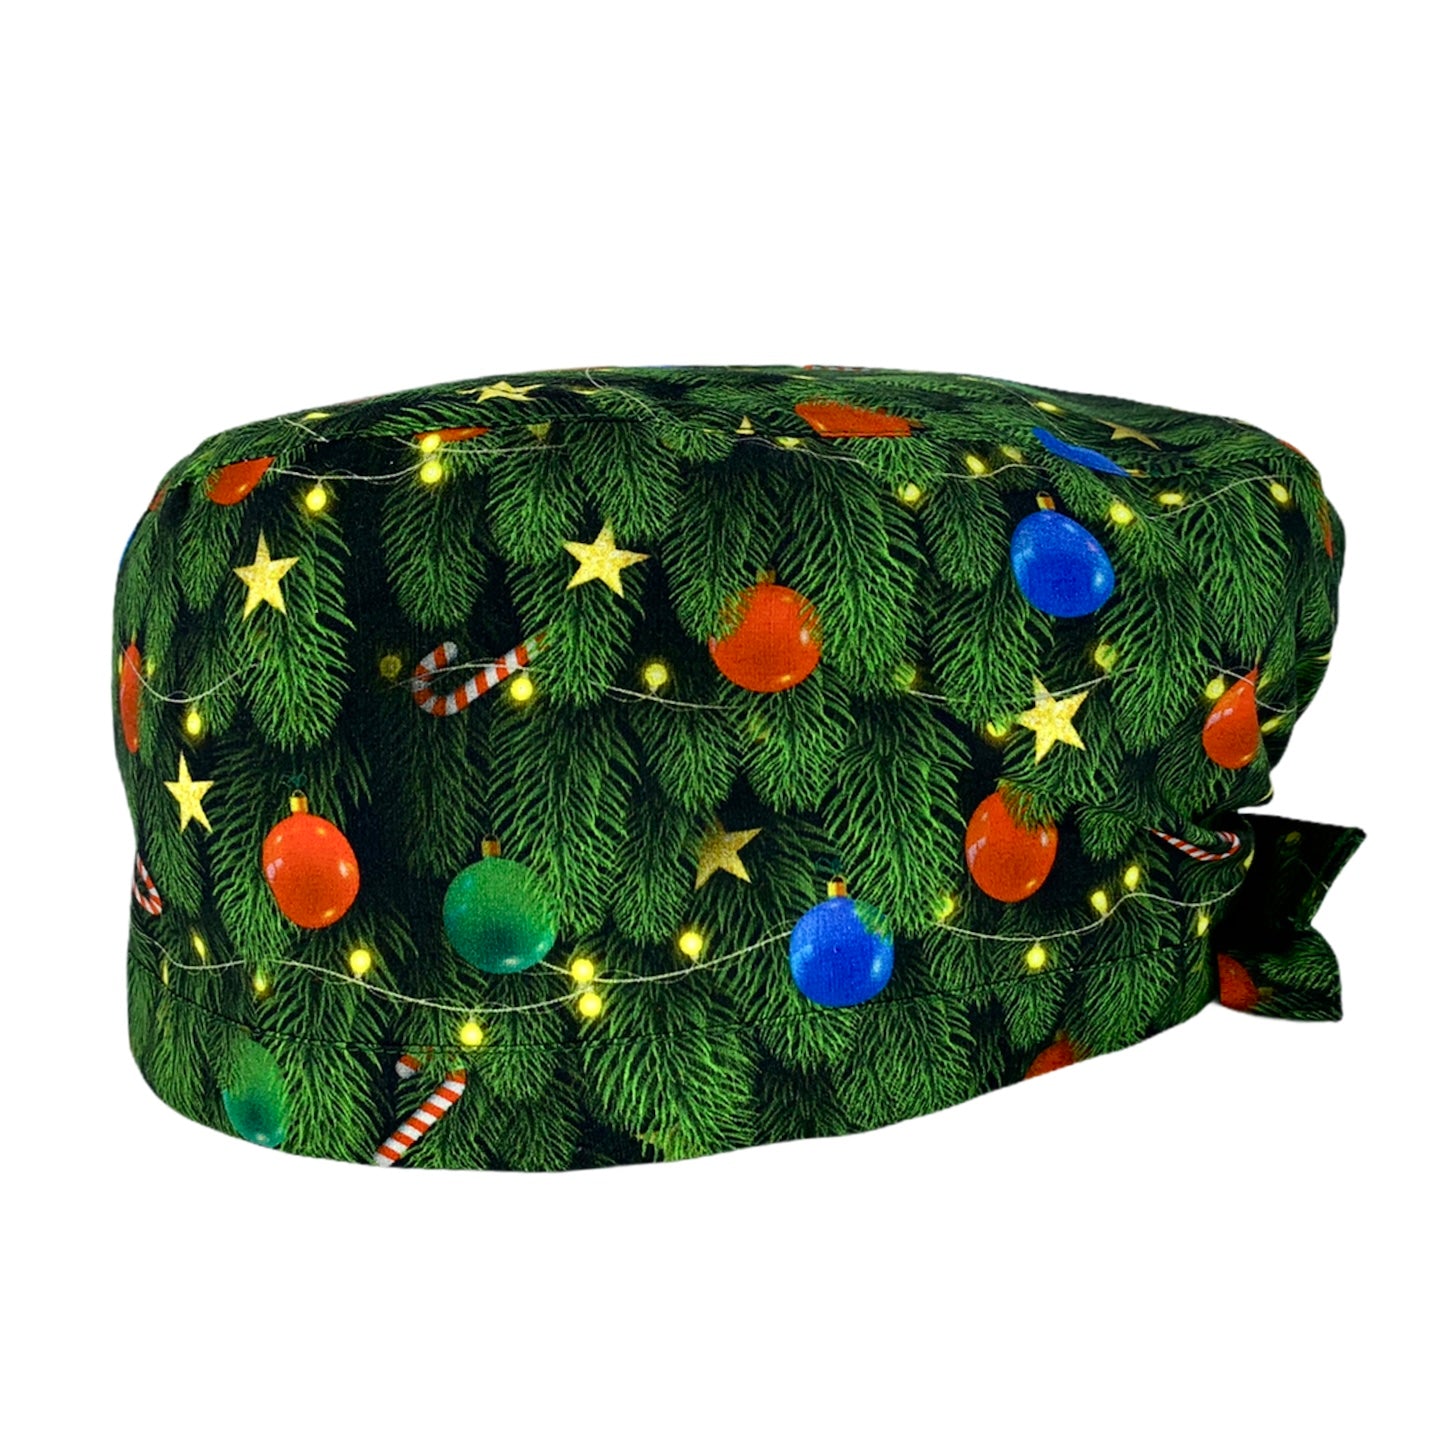 Una cuffietta che riproduce i rami di un albero di Natale con decorazioni di palline rosse, verdi e azzurre, fili di stelline dorate e bastoncini di zucchero rosso e bianco